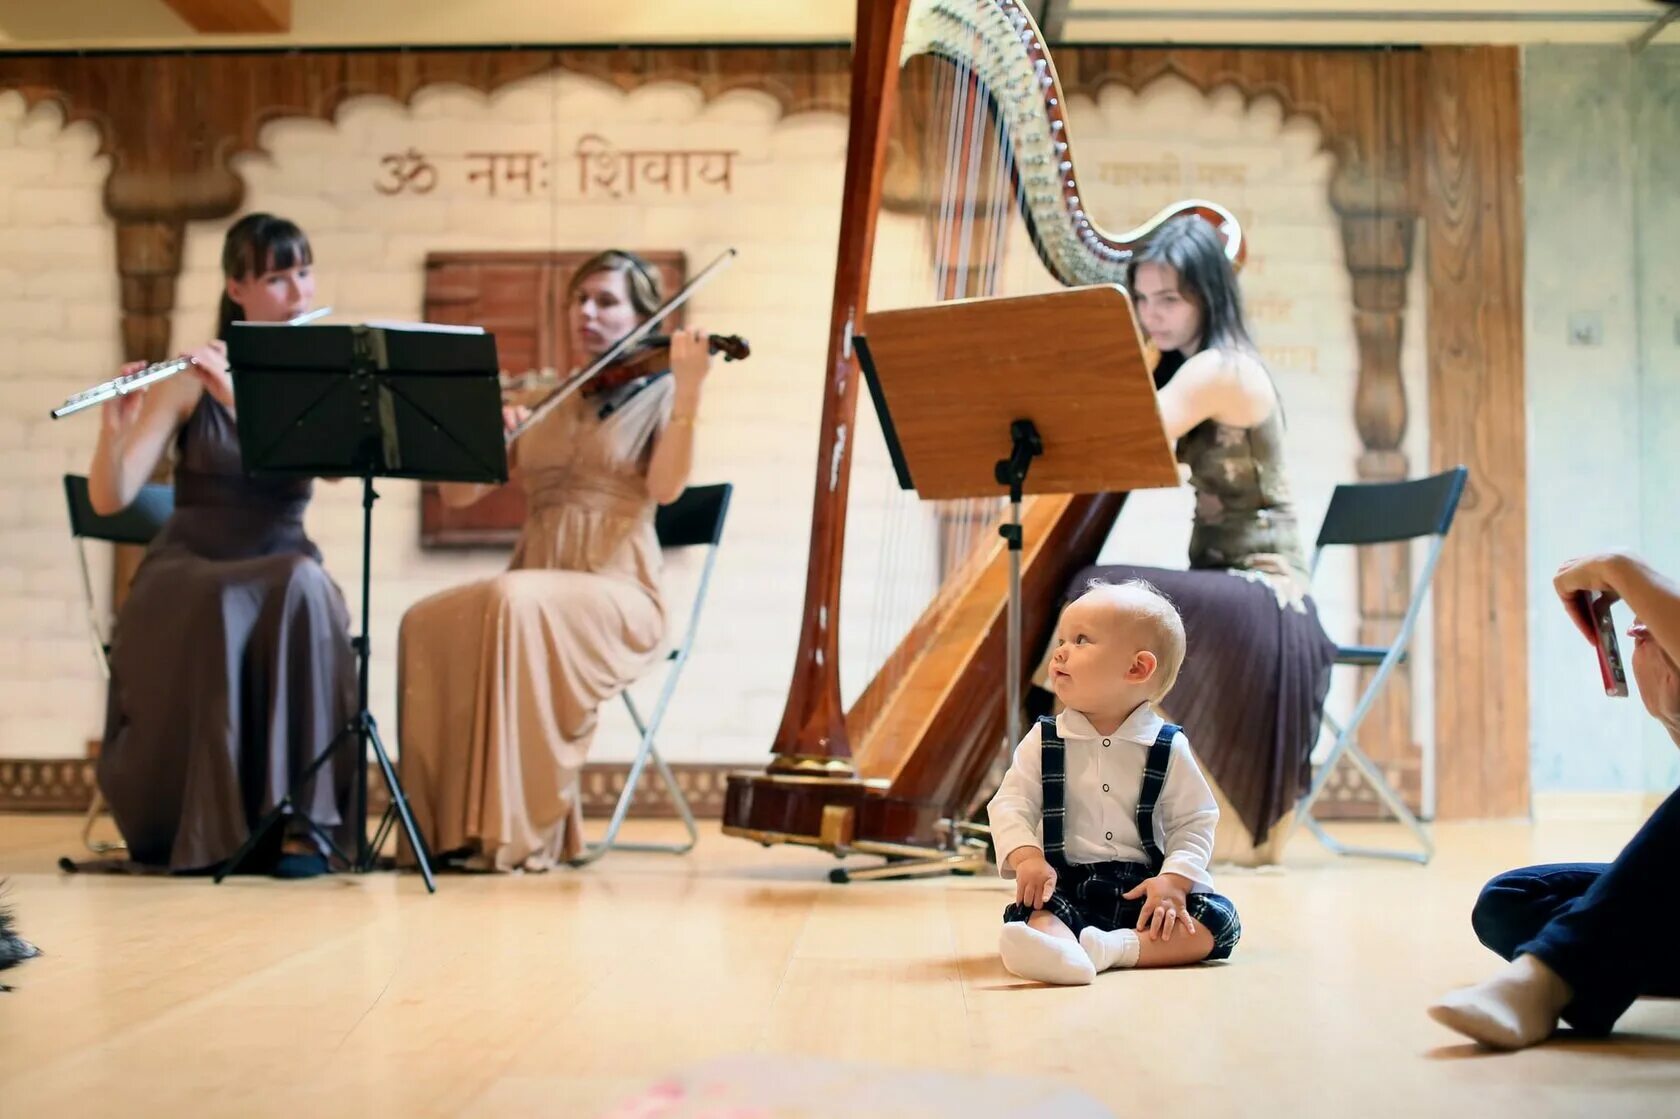 Музыкальный концерт для детей. Музыкальная классика для детей. Музыкальная культура ребенка. Музыкотерапия для детей.